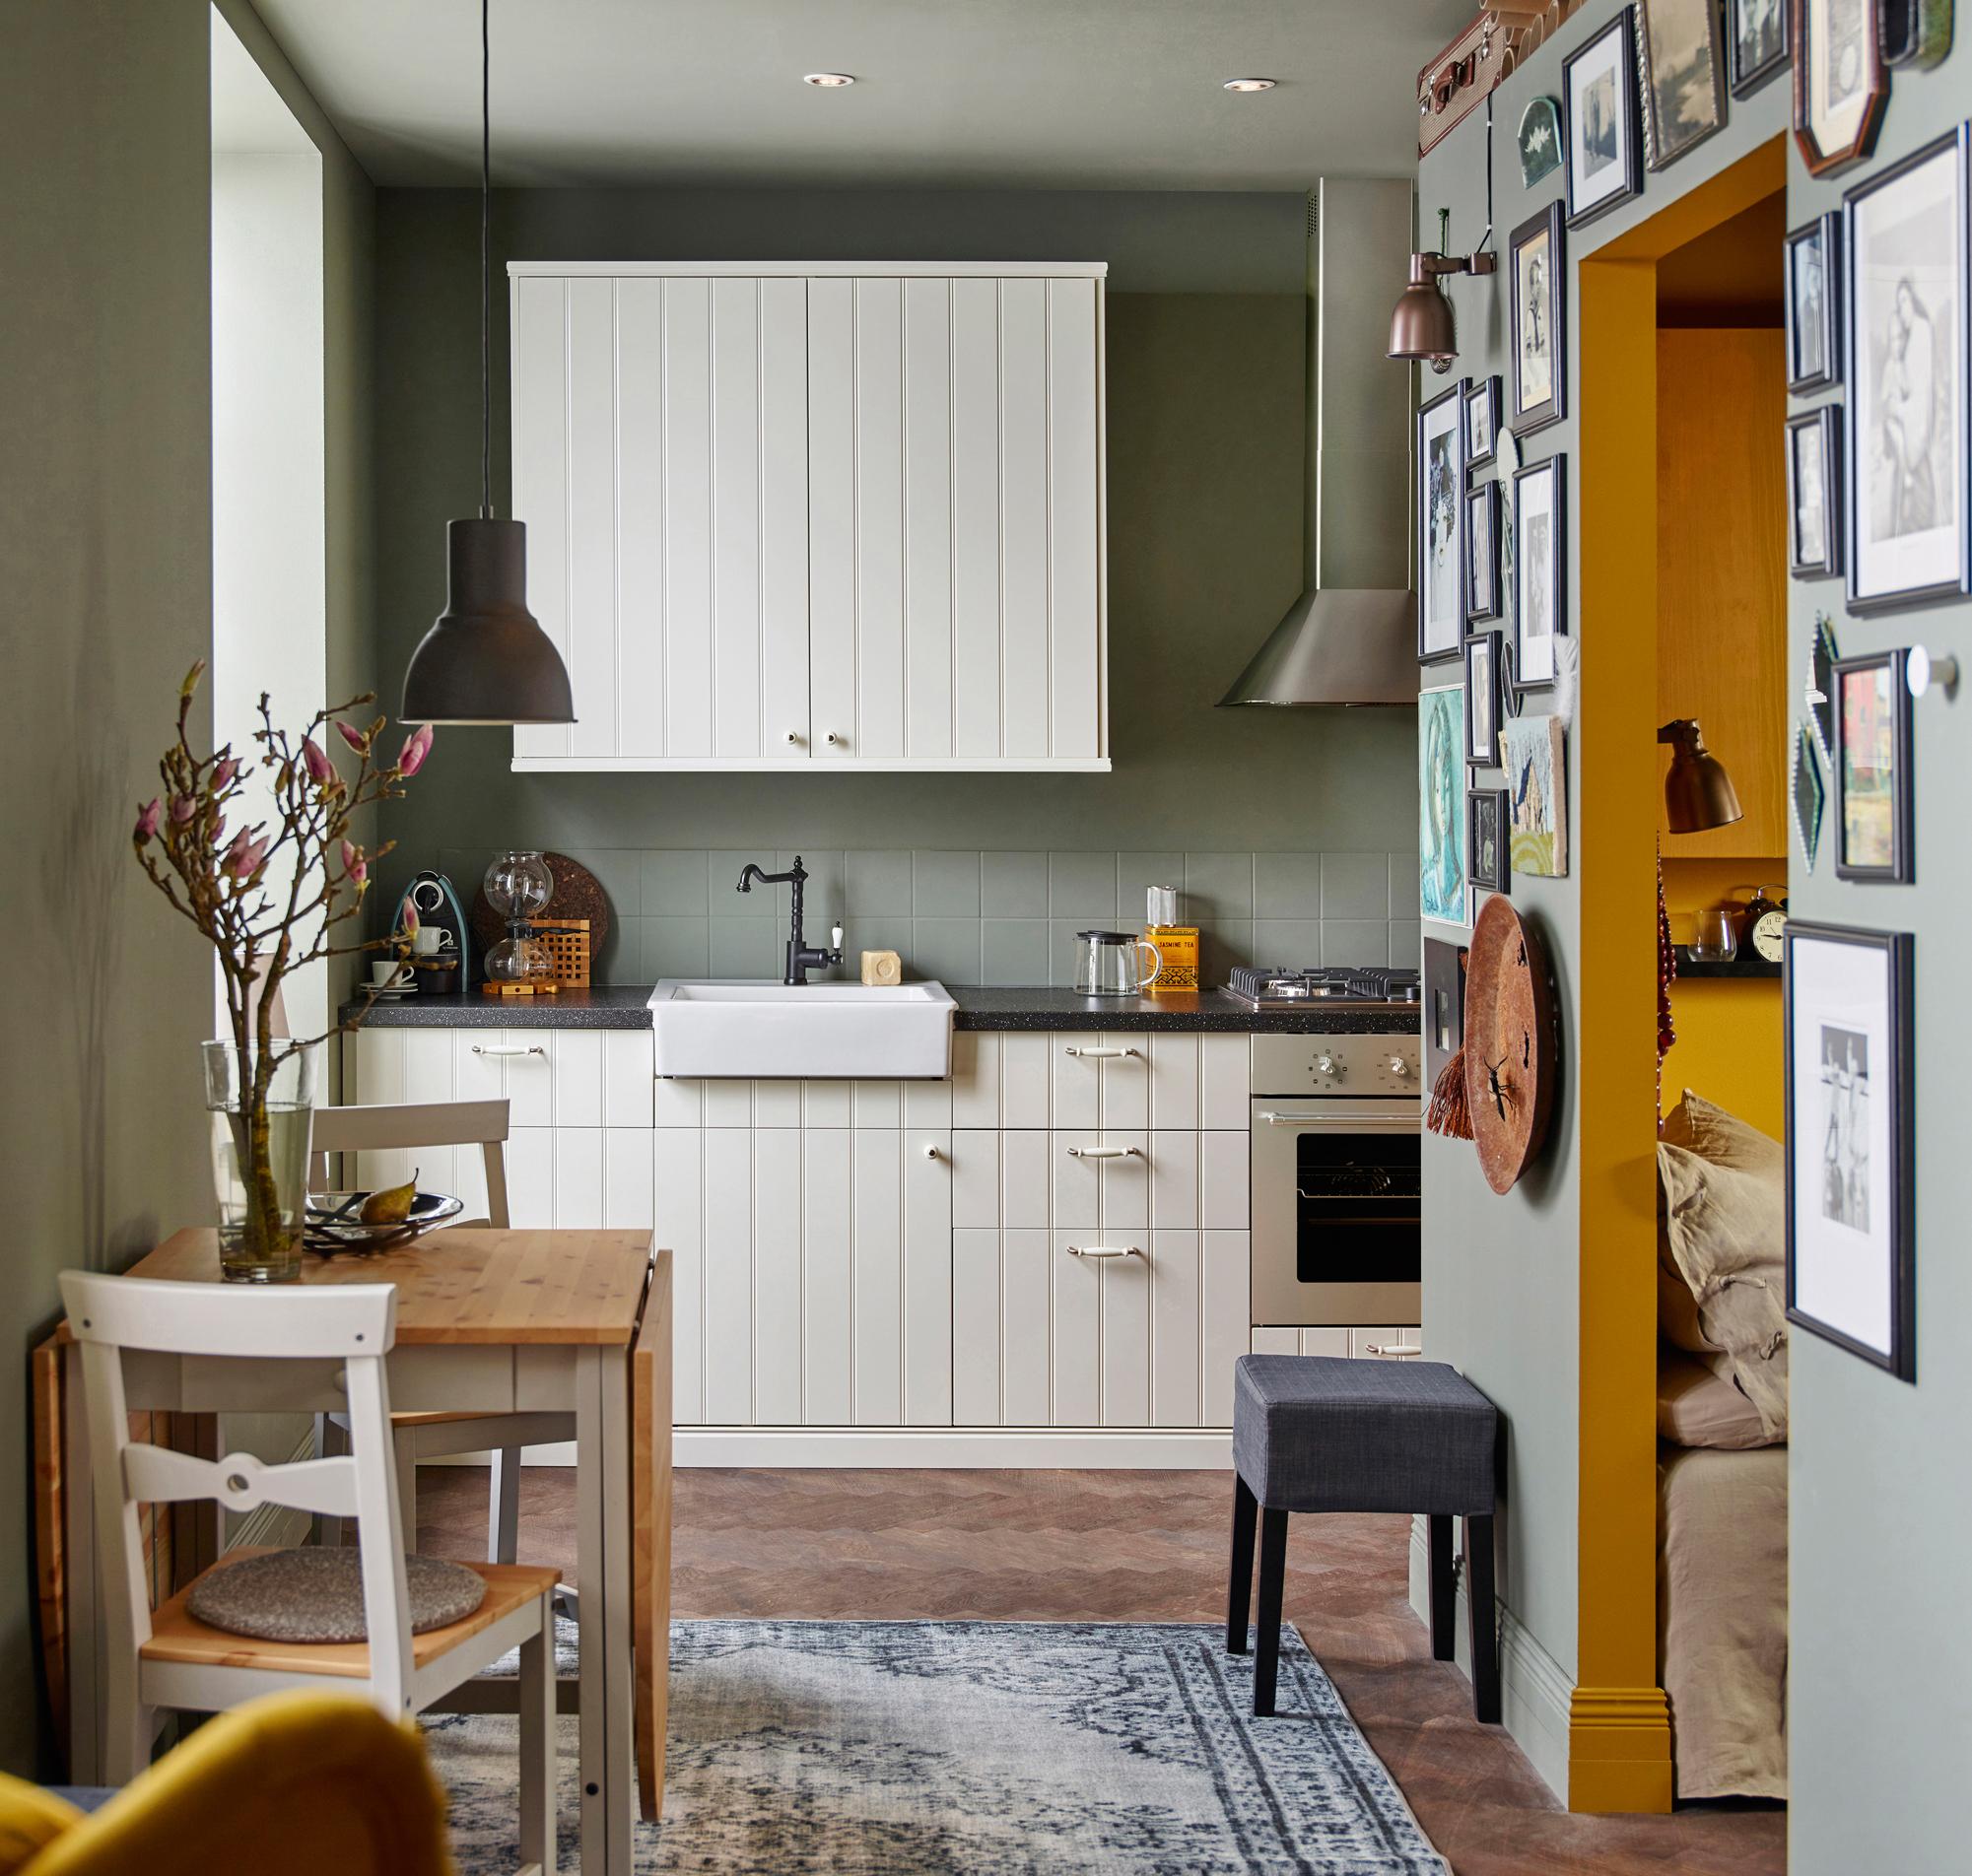 Ideen für kleine Küchen #küche #holztisch #dunstabzugshaube #ikea #holzstuhl #zimmergestaltung ©Inter IKEA Systems B.V.